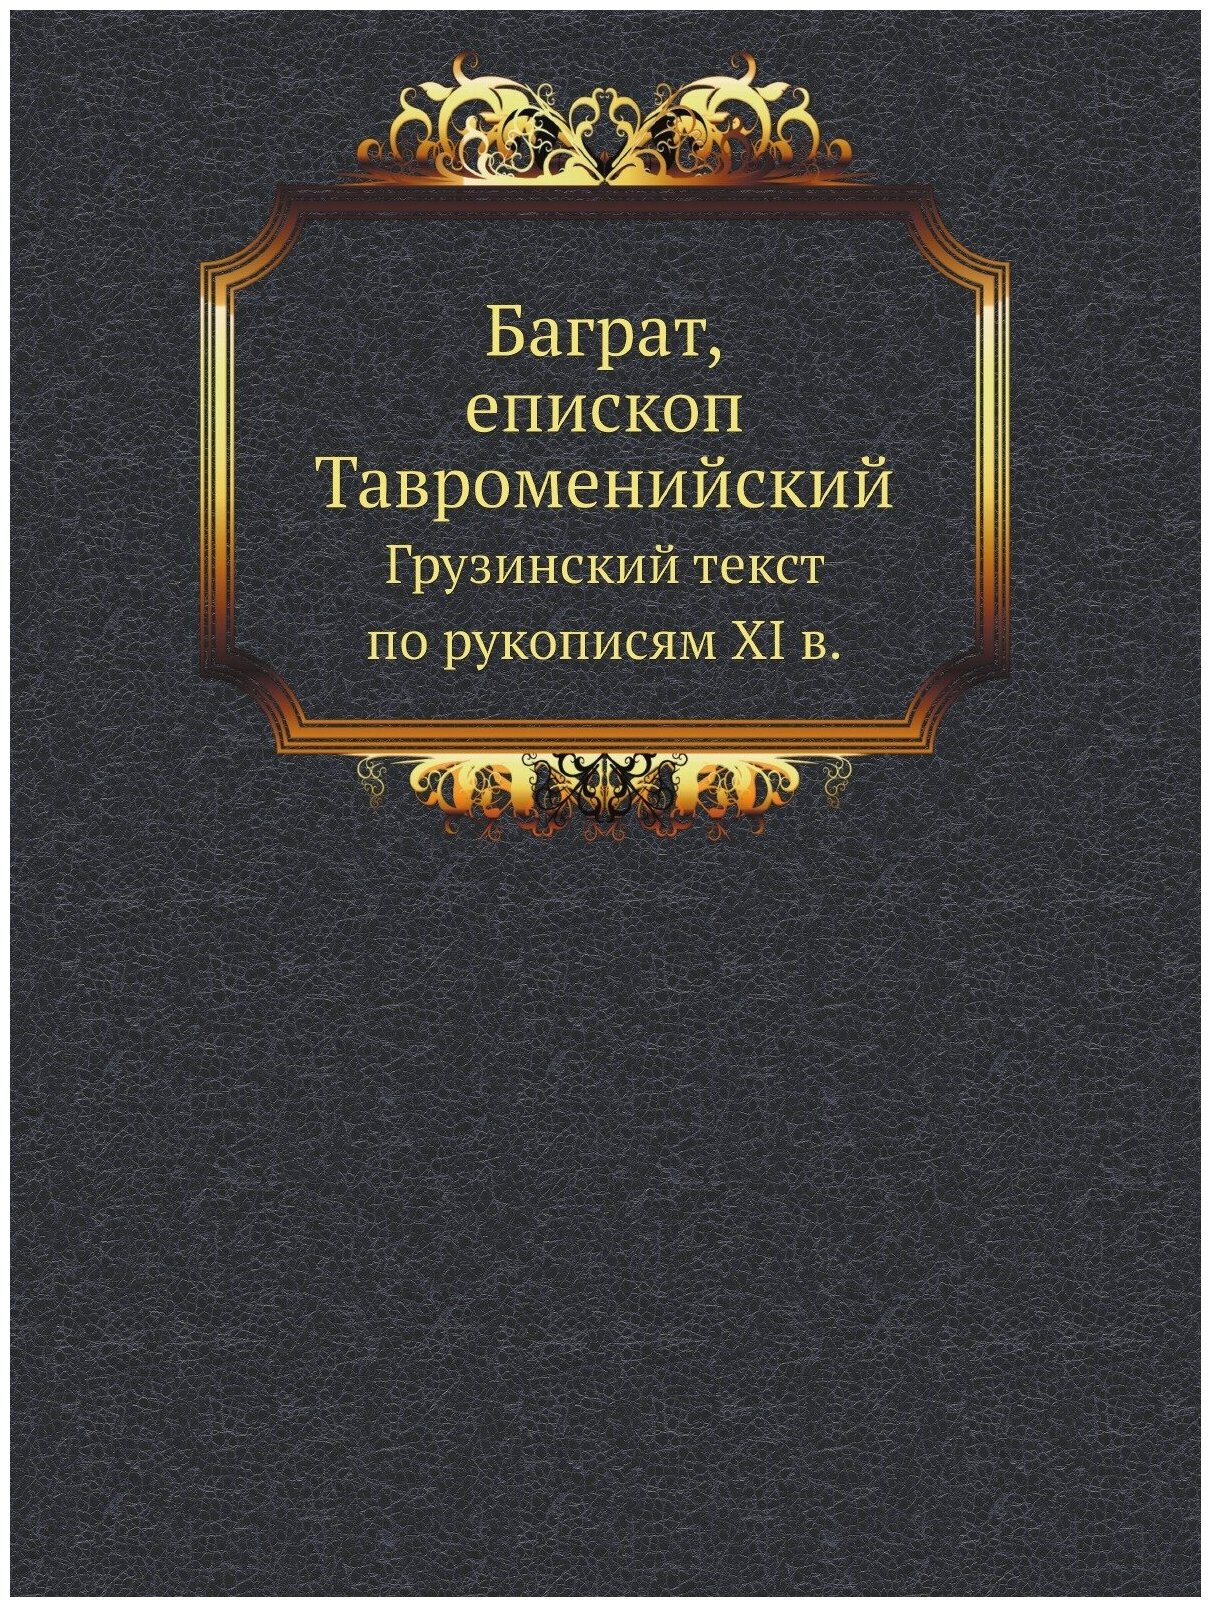 Баграт, епископ Тавроменийский. Грузинский текст по рукописям XI в.